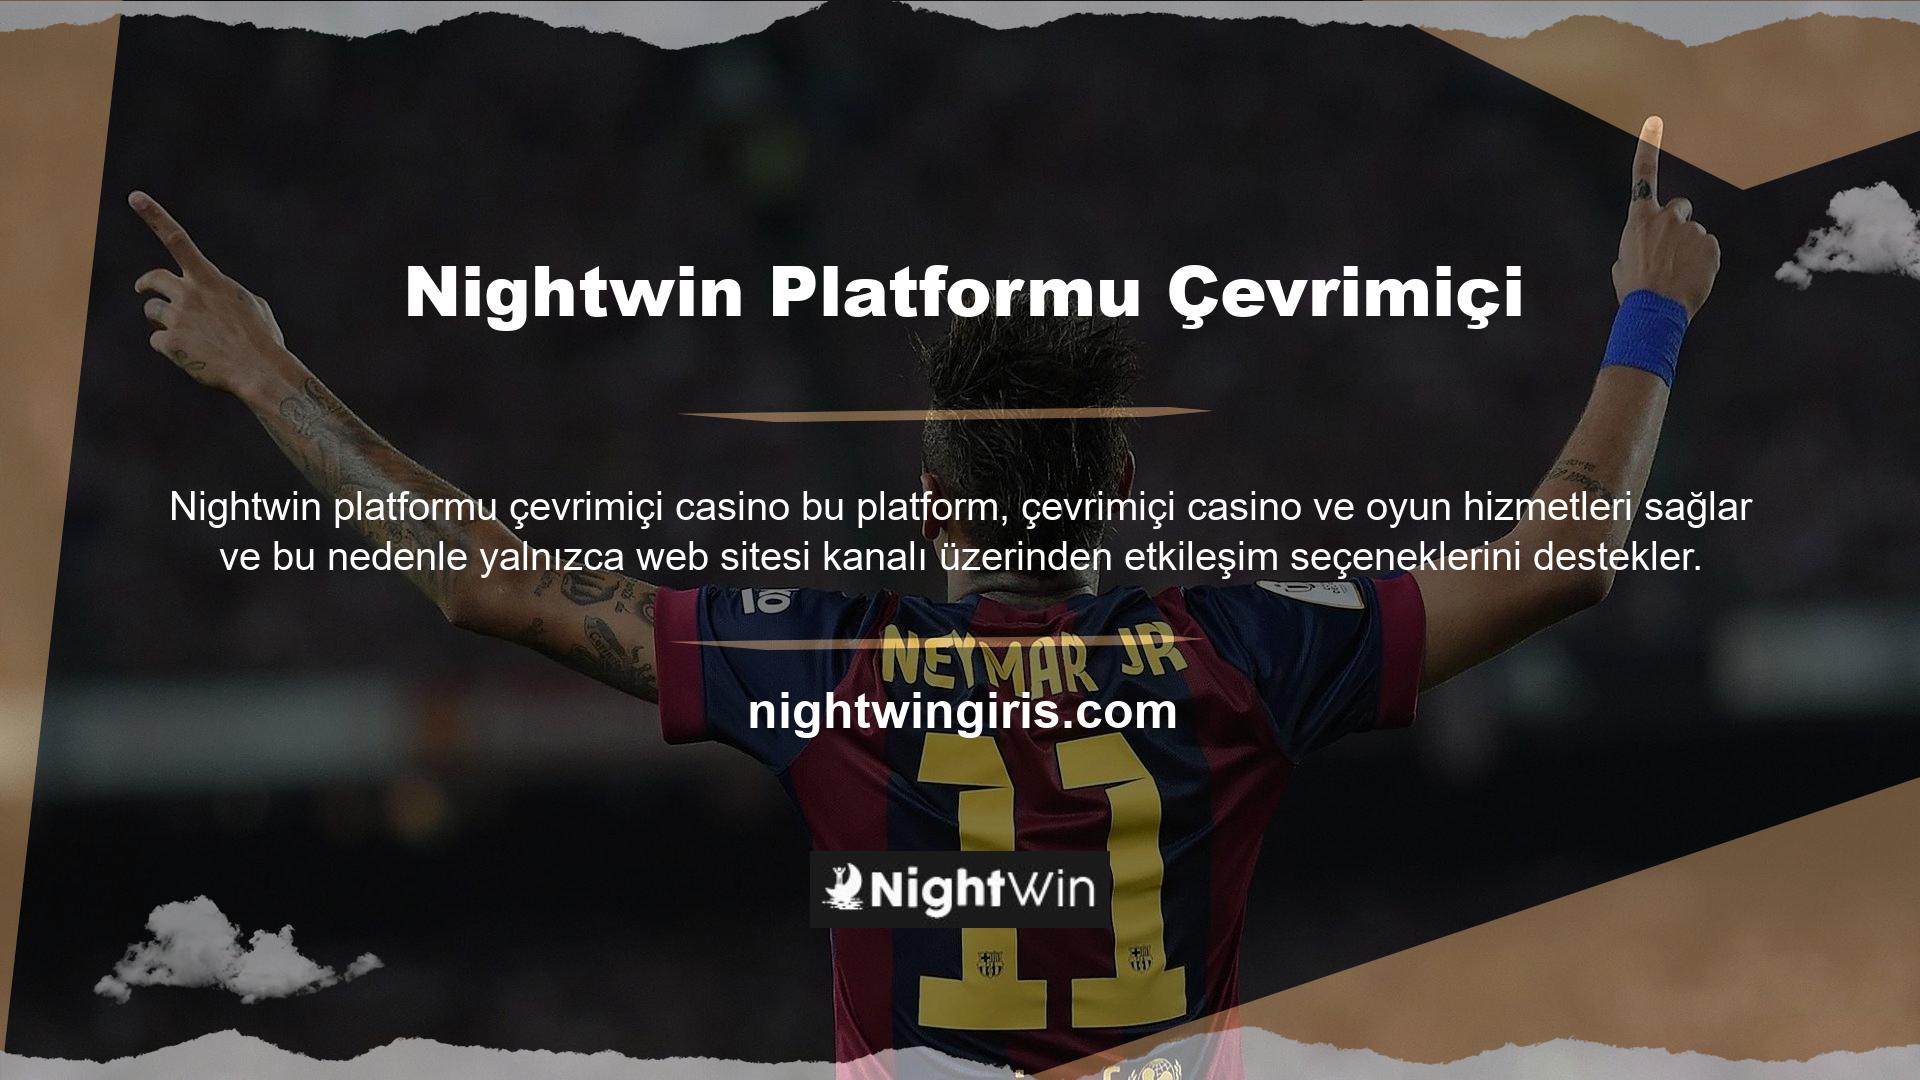 Nightwin çevrimiçi destek web sitesi kullanıcılarına ve siteye üye olmak isteyen kullanıcılara çevrimiçi destek hizmetleri verilmektedir